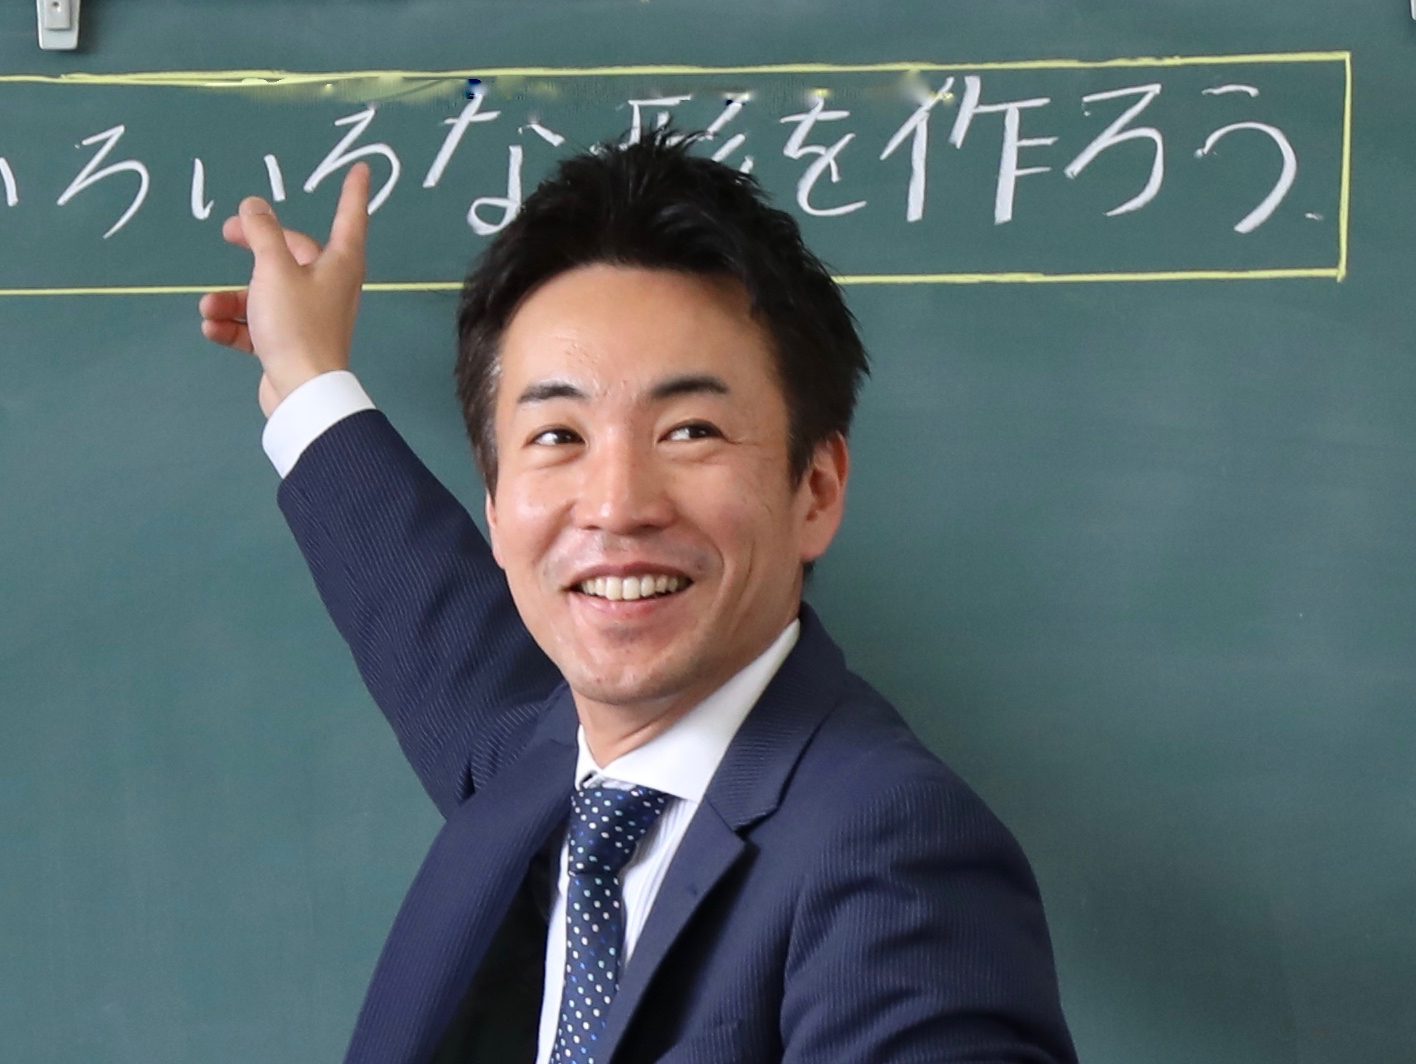 子どものために先生の働き方を良くしたい 元小学校教員の揺るぎない意志と挑戦 Teach For Japan